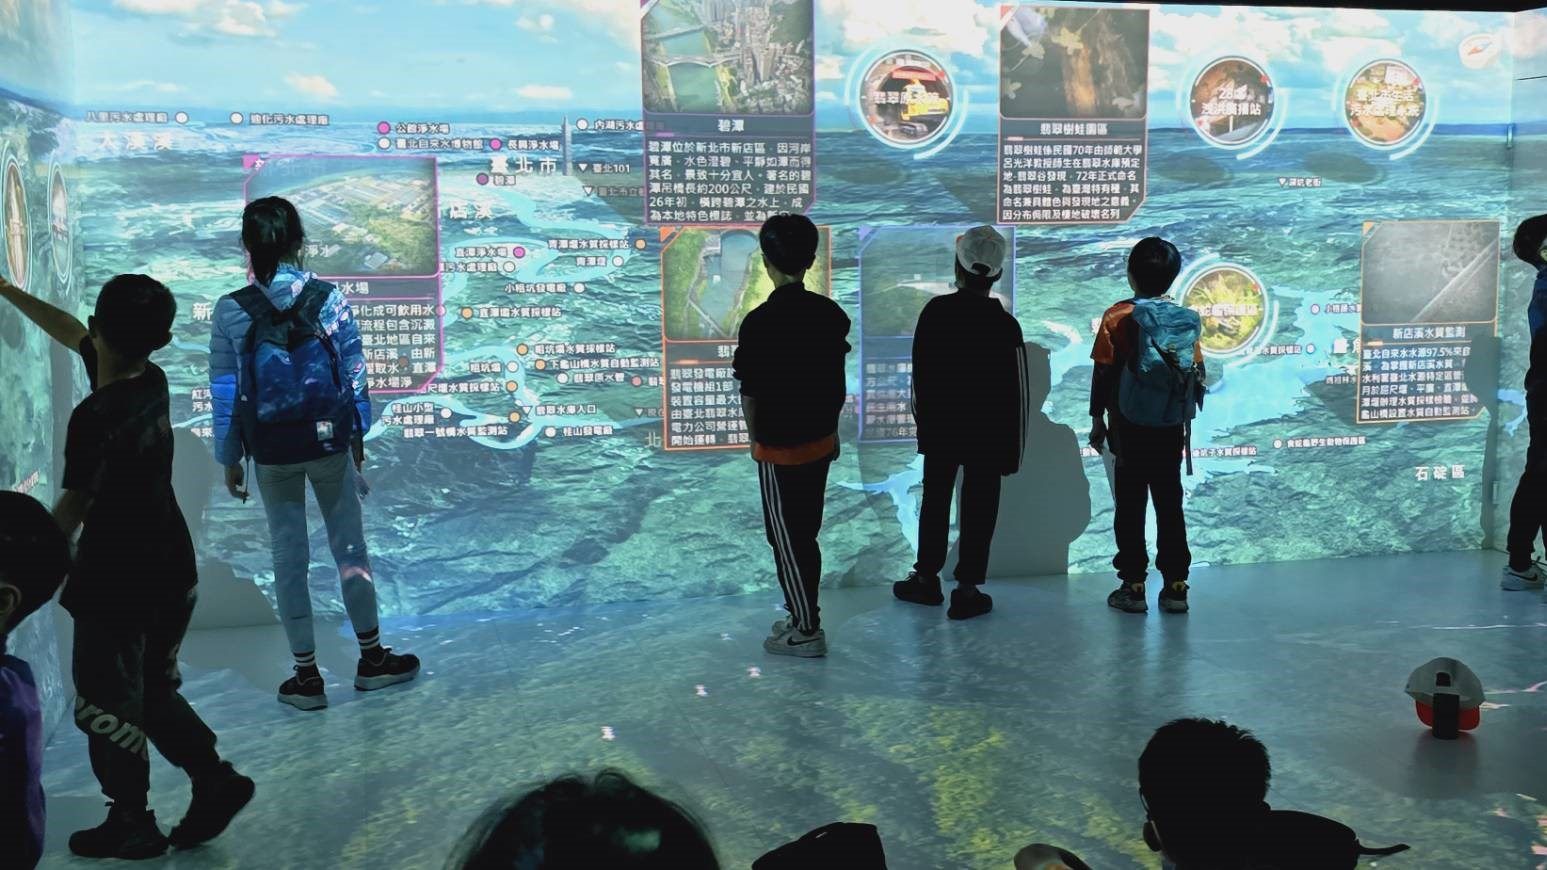 翡翠水庫智慧導覽系統VＲ虛擬實境觸控牆體驗